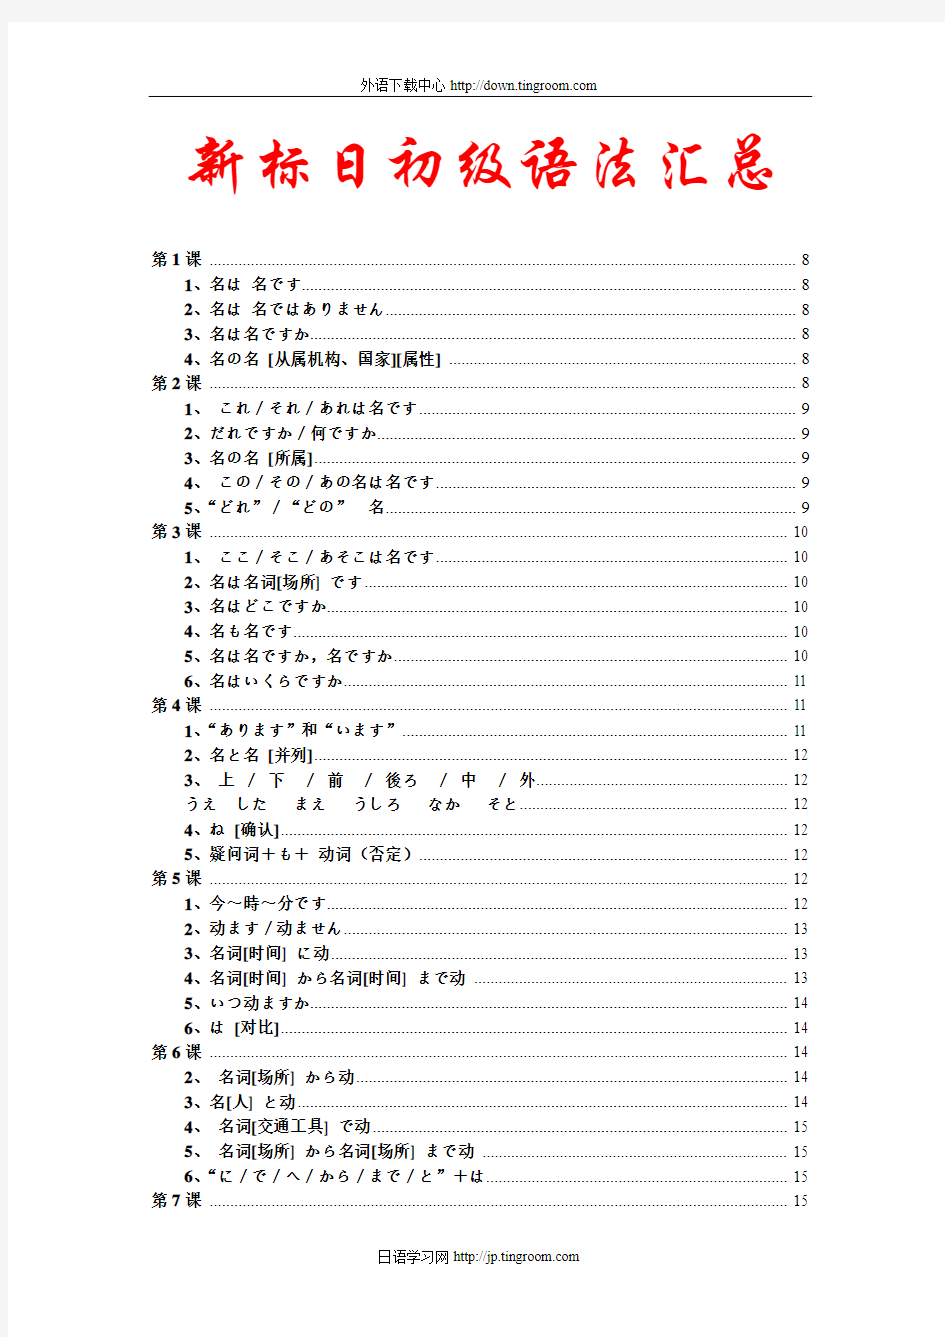 新版标准日本语-初级-语法汇总